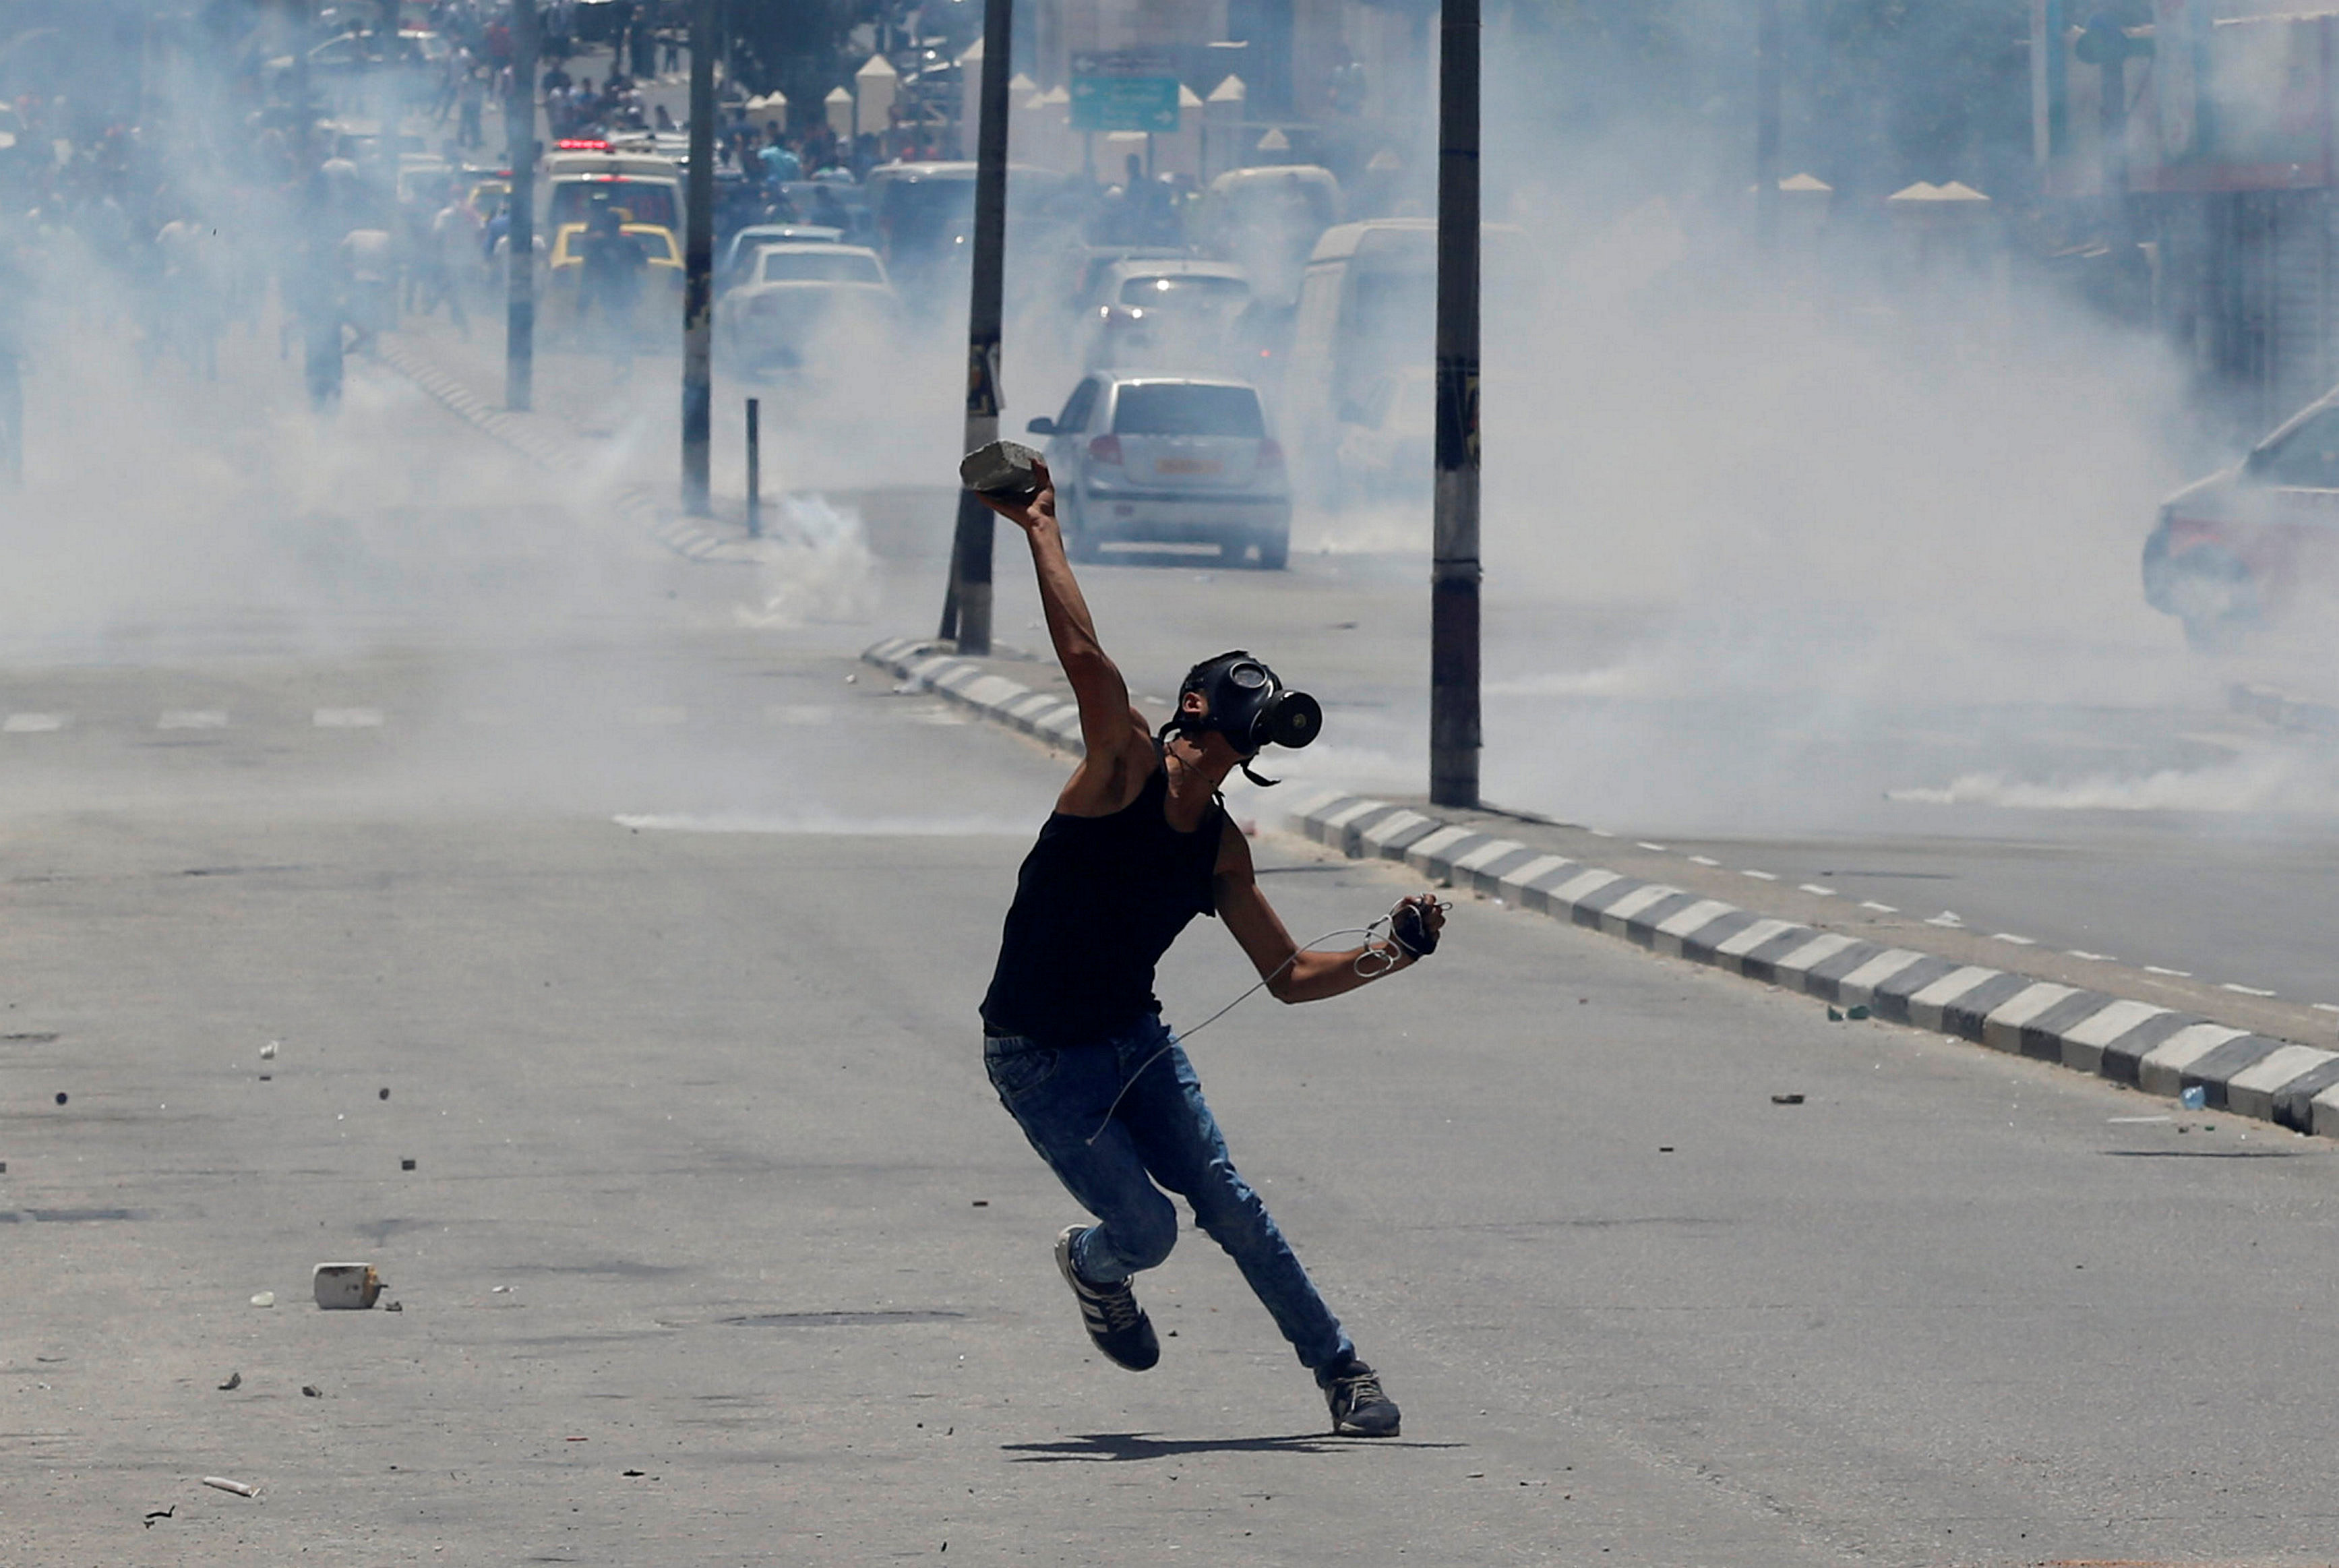 شاب يرتدى ماسك لحمايته من الغاز خلال الاشتباكات